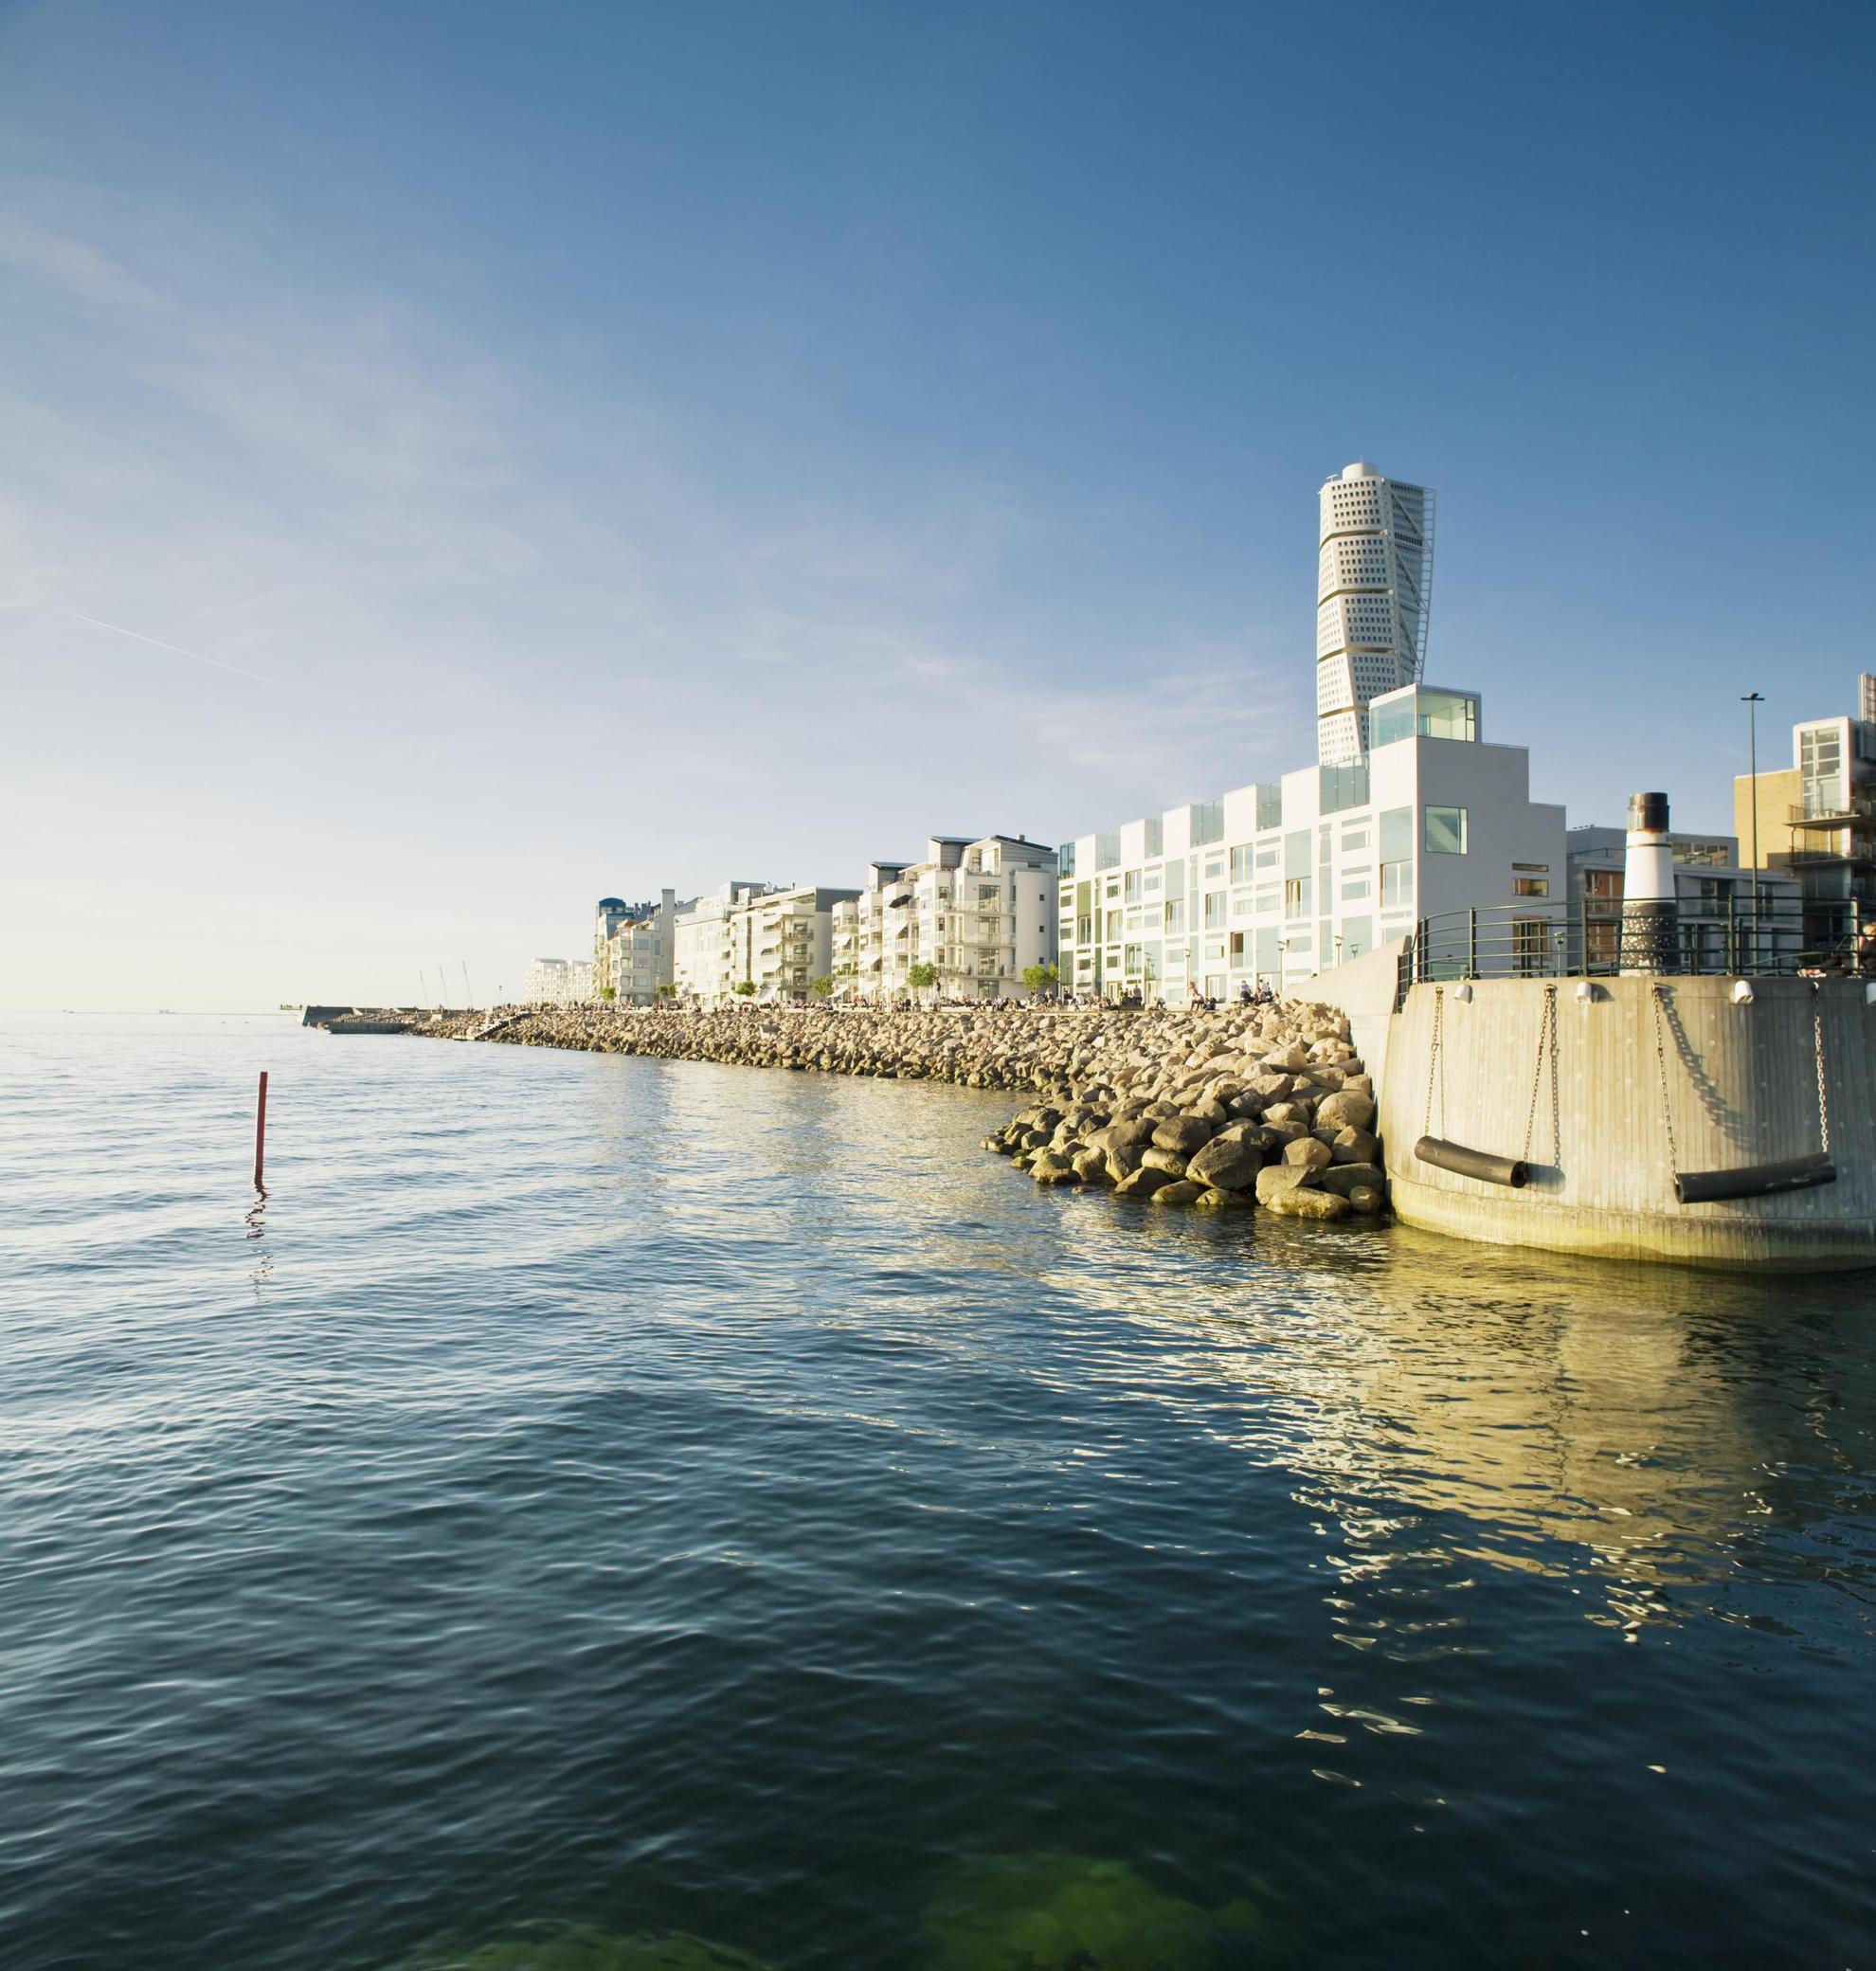 Vue sur la ville de Malmö avec notamment l'océan, une jetée en béton, des immeubles et le gratte-ciel Turning Torso.